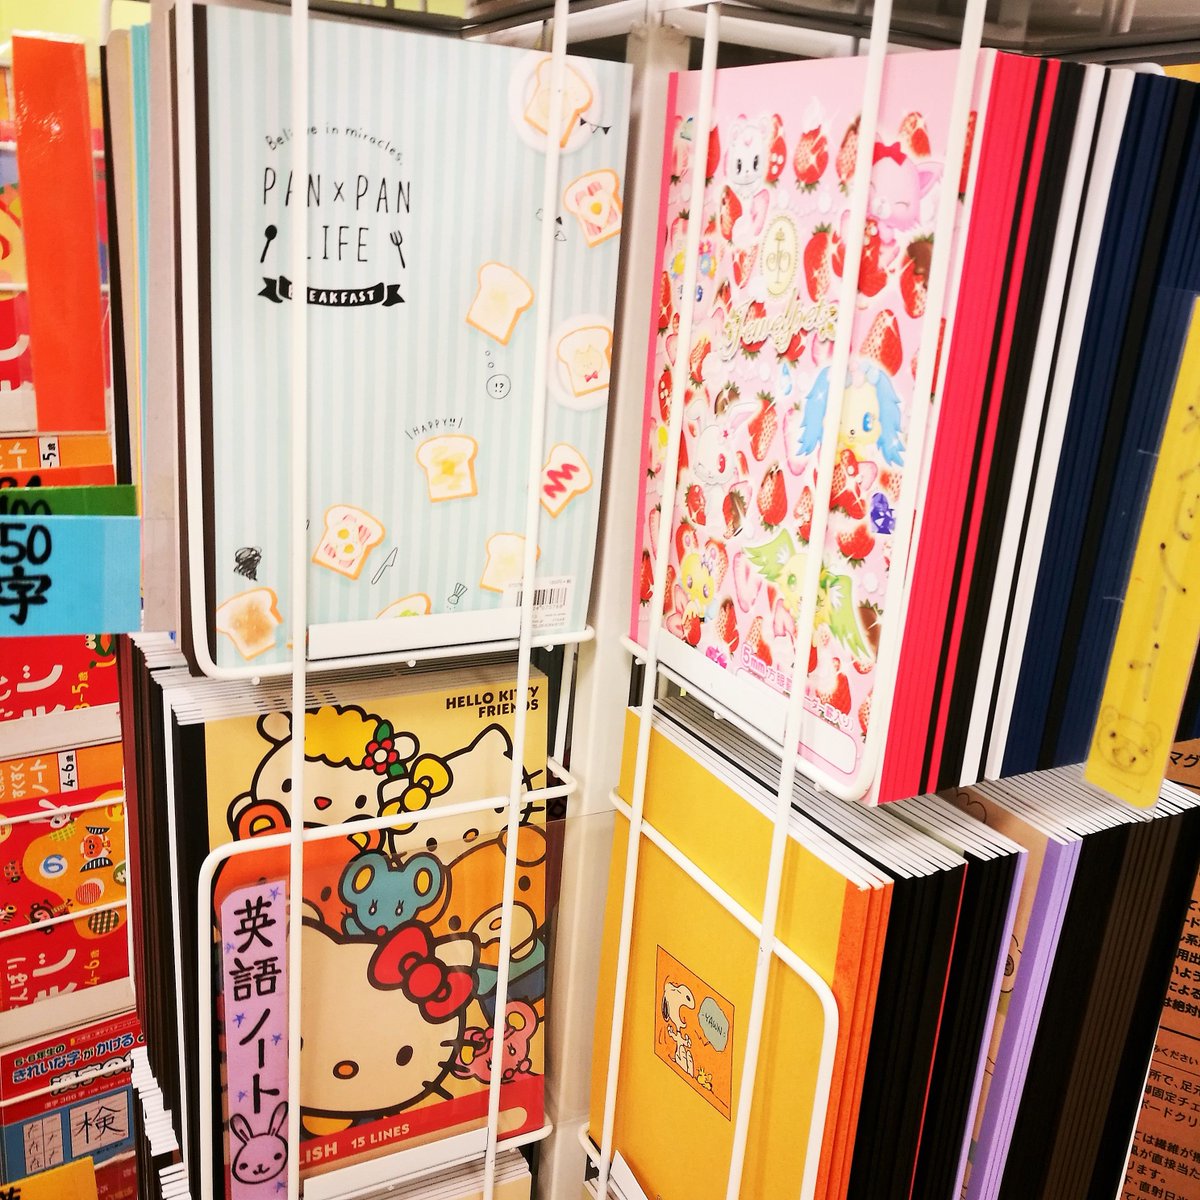 文具のかわしま 横須賀 Pa Twitter 3階売り場では ノートを取り扱っております 連絡帳や 大学ノート 英語のノートなど 可愛いデザインも揃ってます 文具のかわしま T Co Lrbx2uctgi Twitter